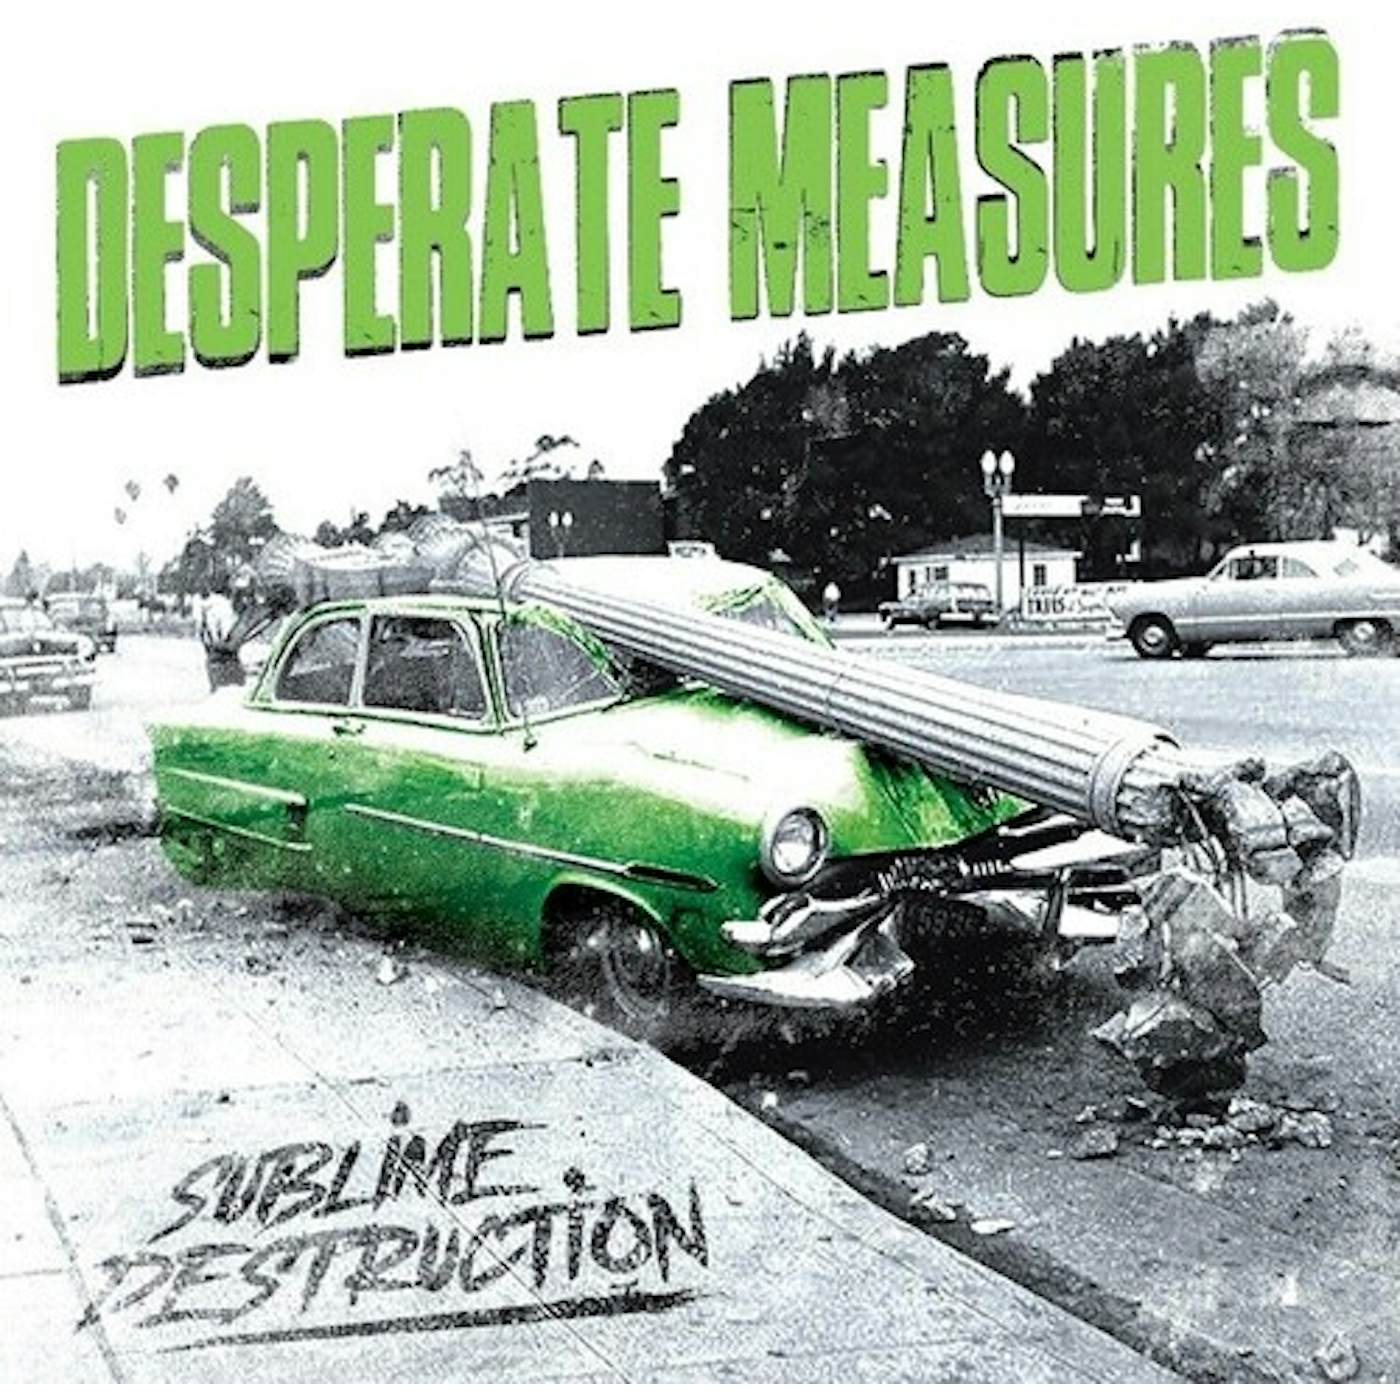 Desperate Measures SUBLIME DESTRUCTION CD